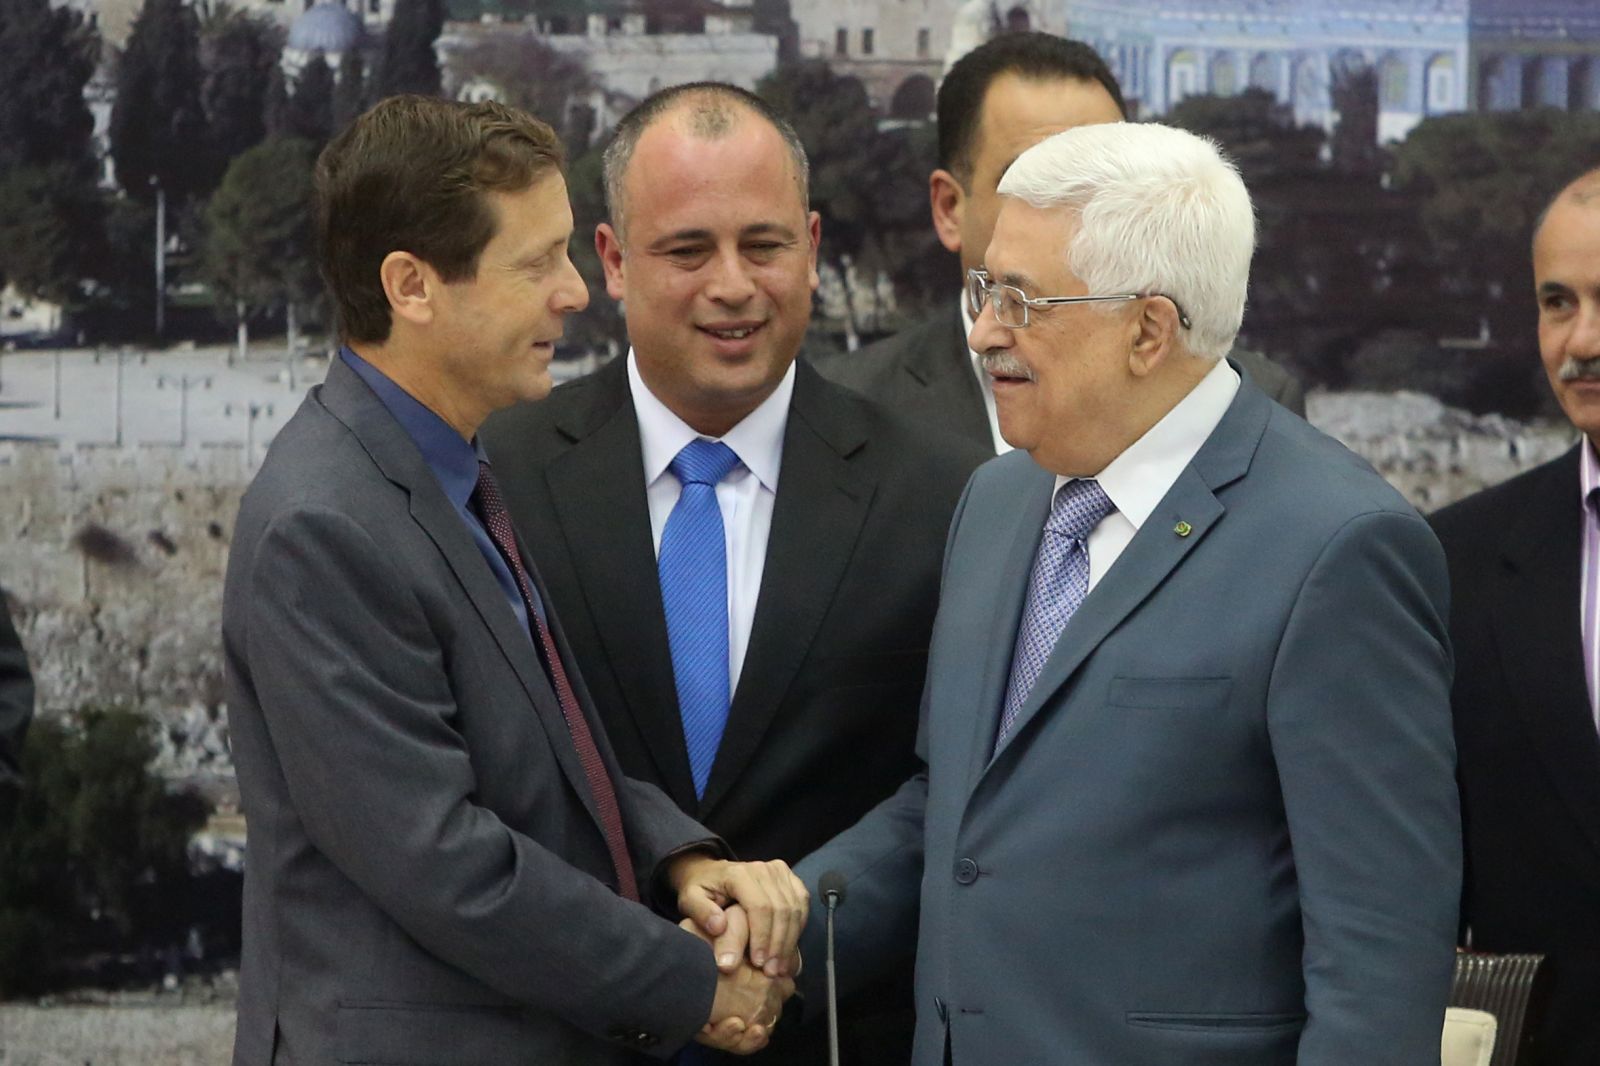 زعيم حزب العمل الإسرائيلي، يتسحاك هرتسوج مع محمود عباس أبو مازن